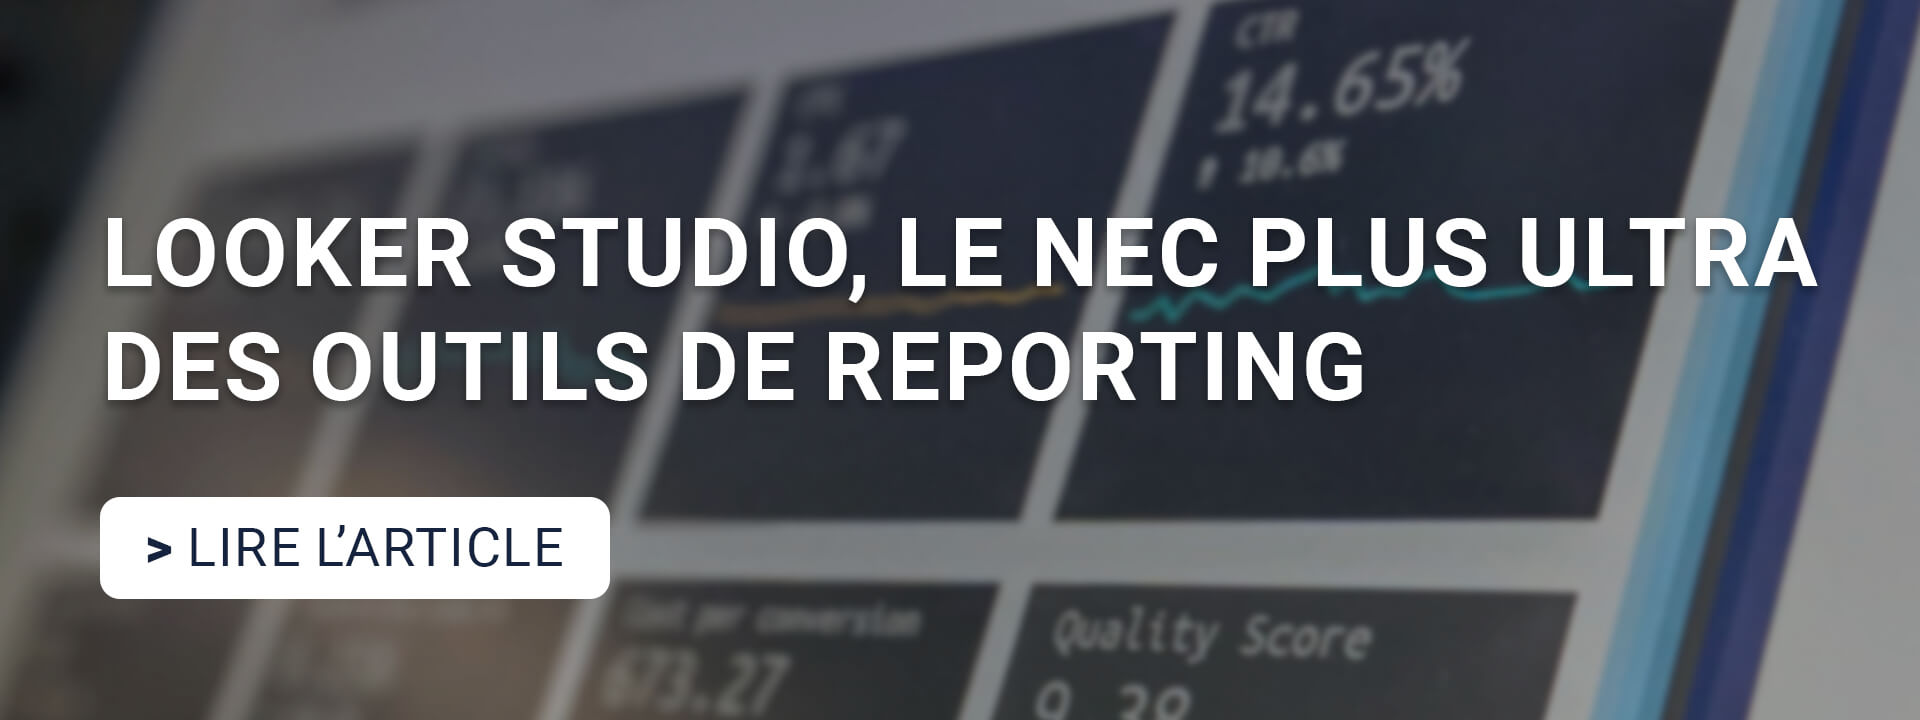 Looker Studio, le nec plus ultra des outils de reporting